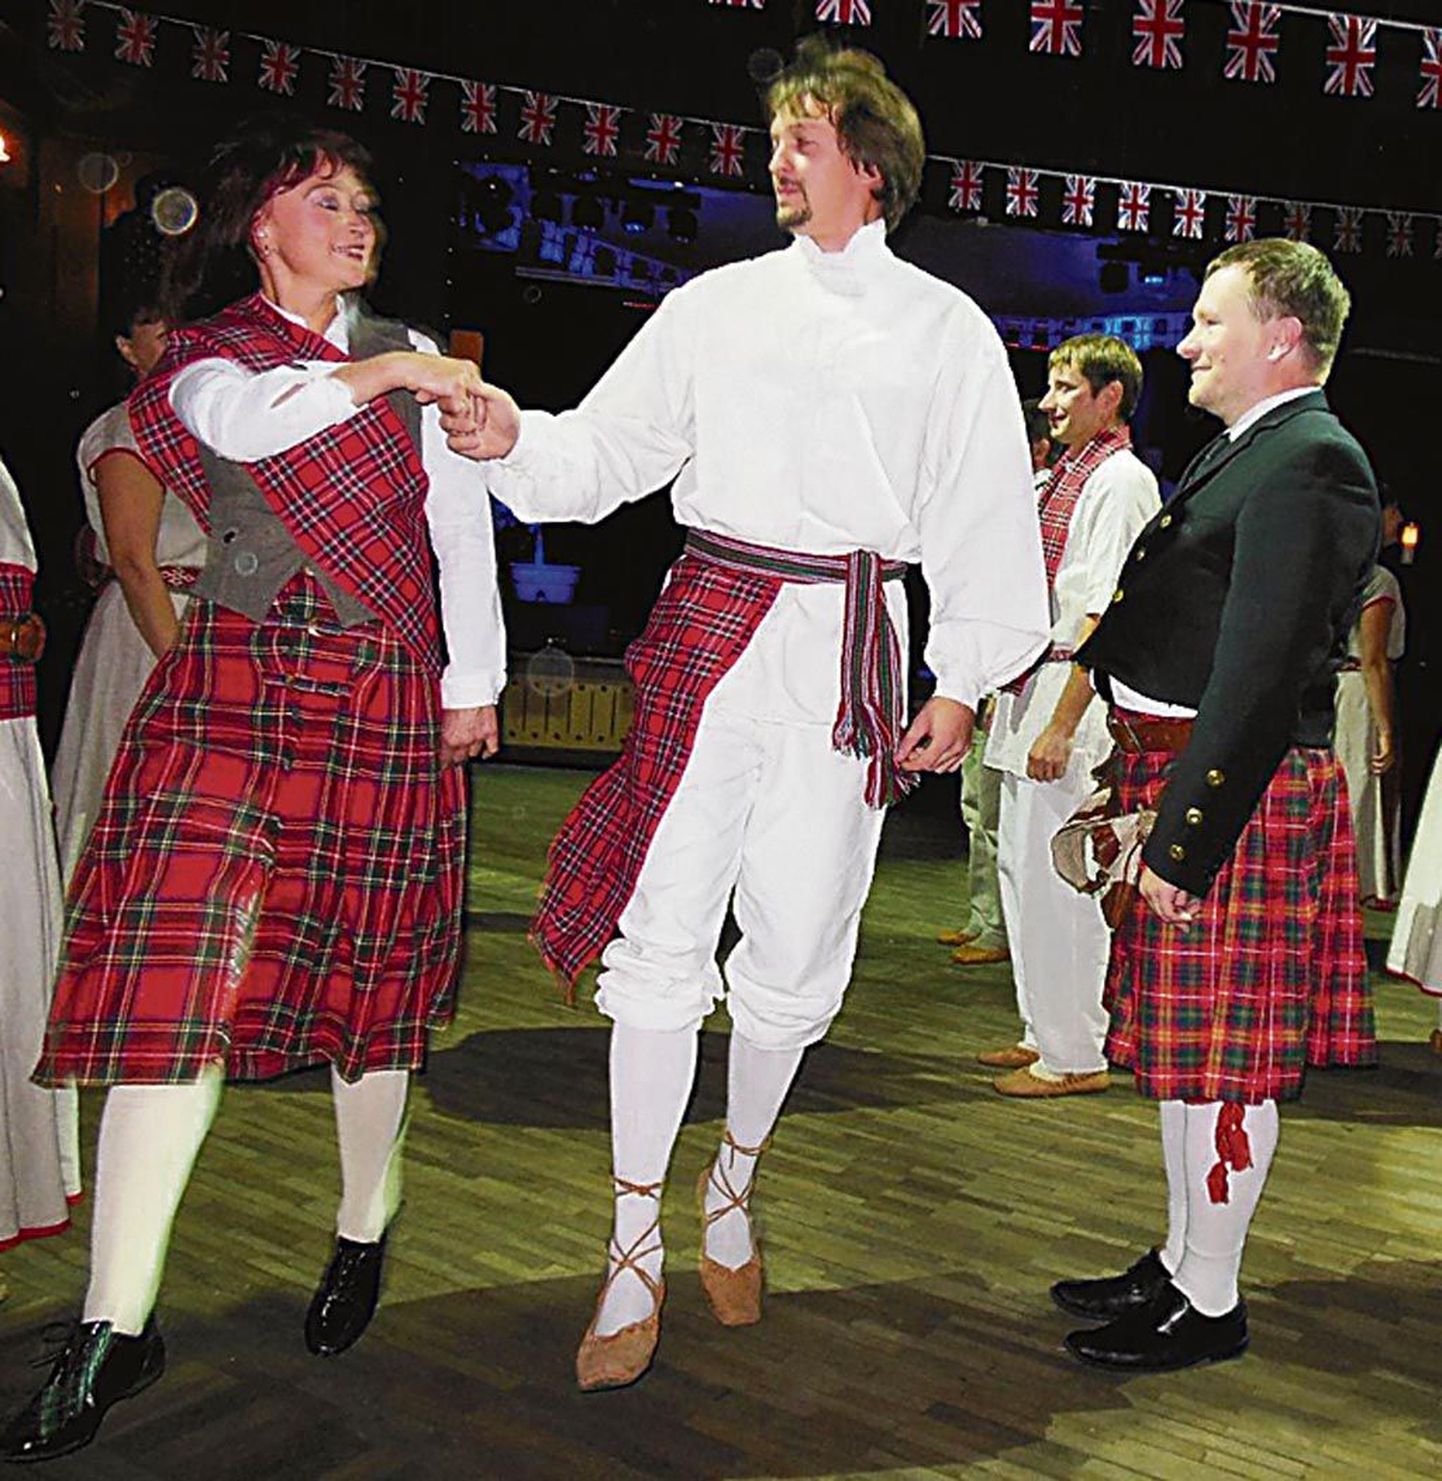 Rahvatantsurühm Kirmas esitas Šoti tantse eelmistel Briti päevadelgi. Seekord saab neid näha Tervise spaa kultuurikeskuses.